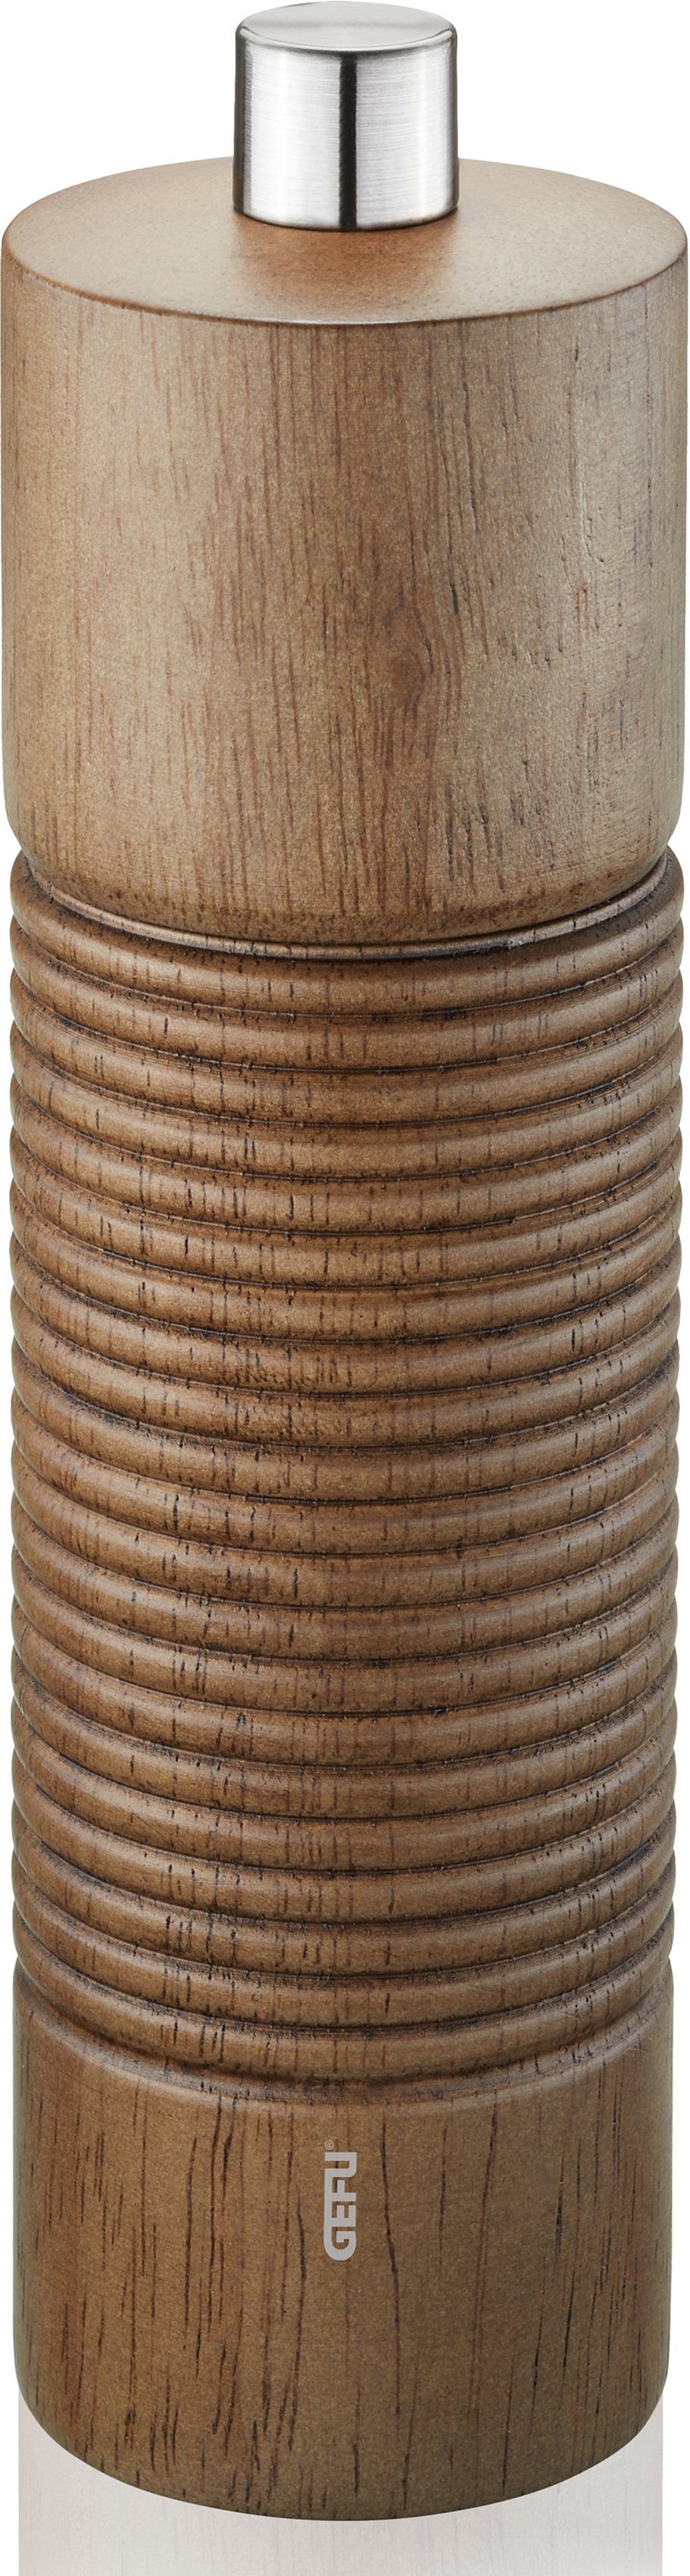 manuell, Keramikmahlwerk Salz-/Pfeffermühle GEFU einstellbares holzfarben/silberfarben stufenlos TEDORO